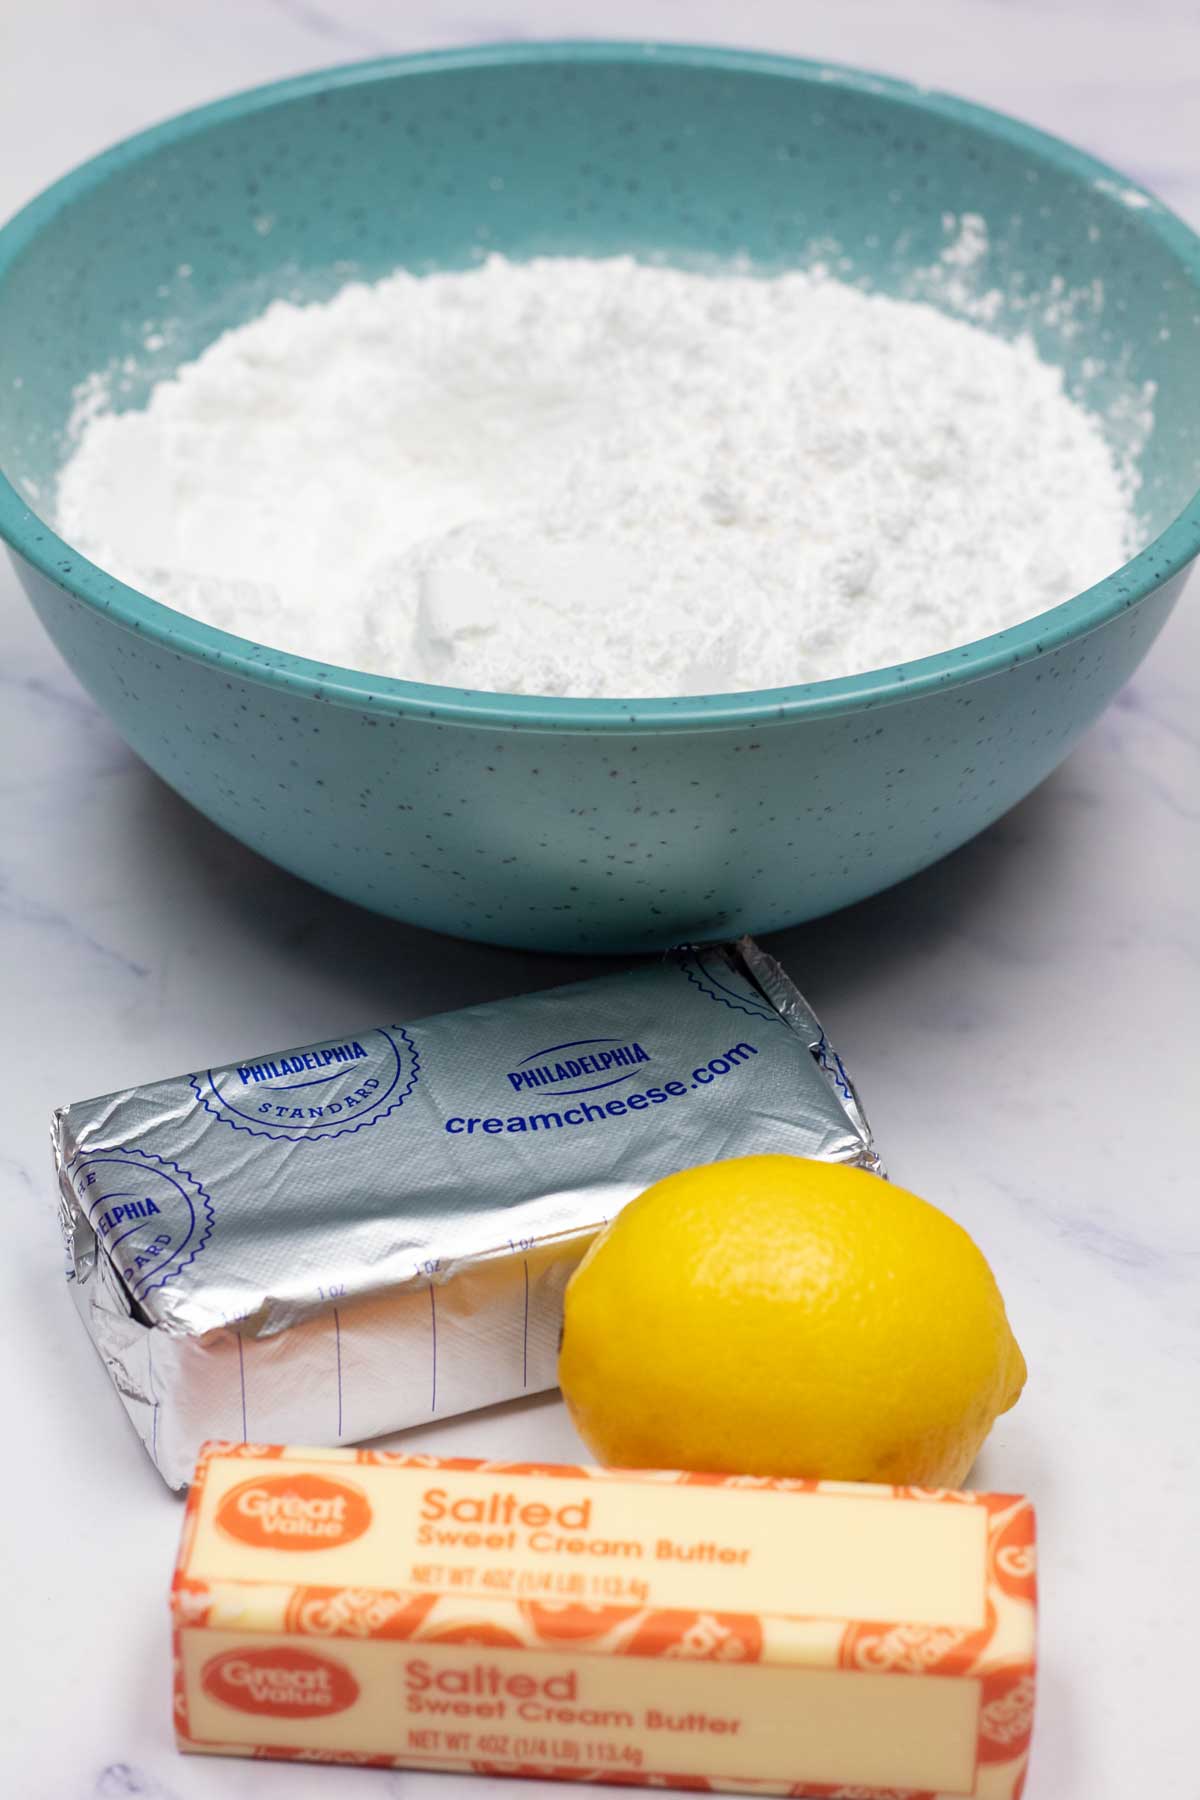 Високо изображение, показващо съставки за глазура с крема сирене с лимон.